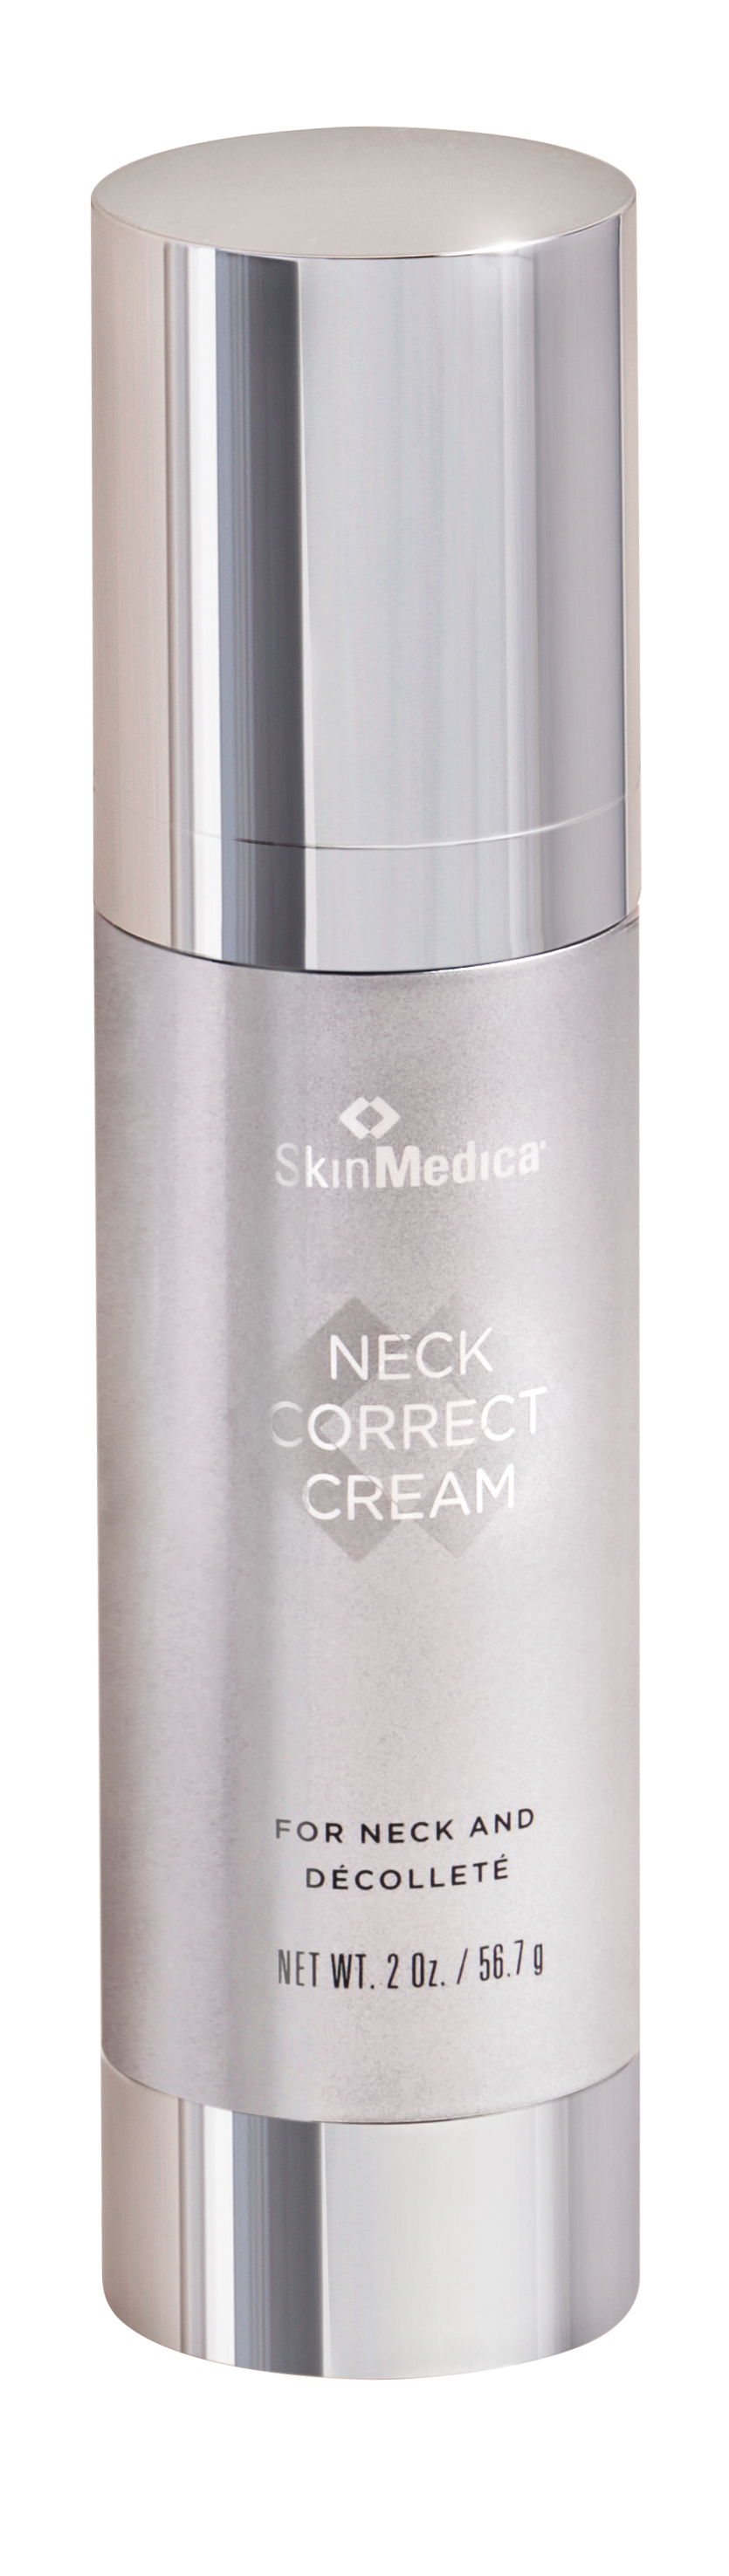 Skin Medica Neck Correct